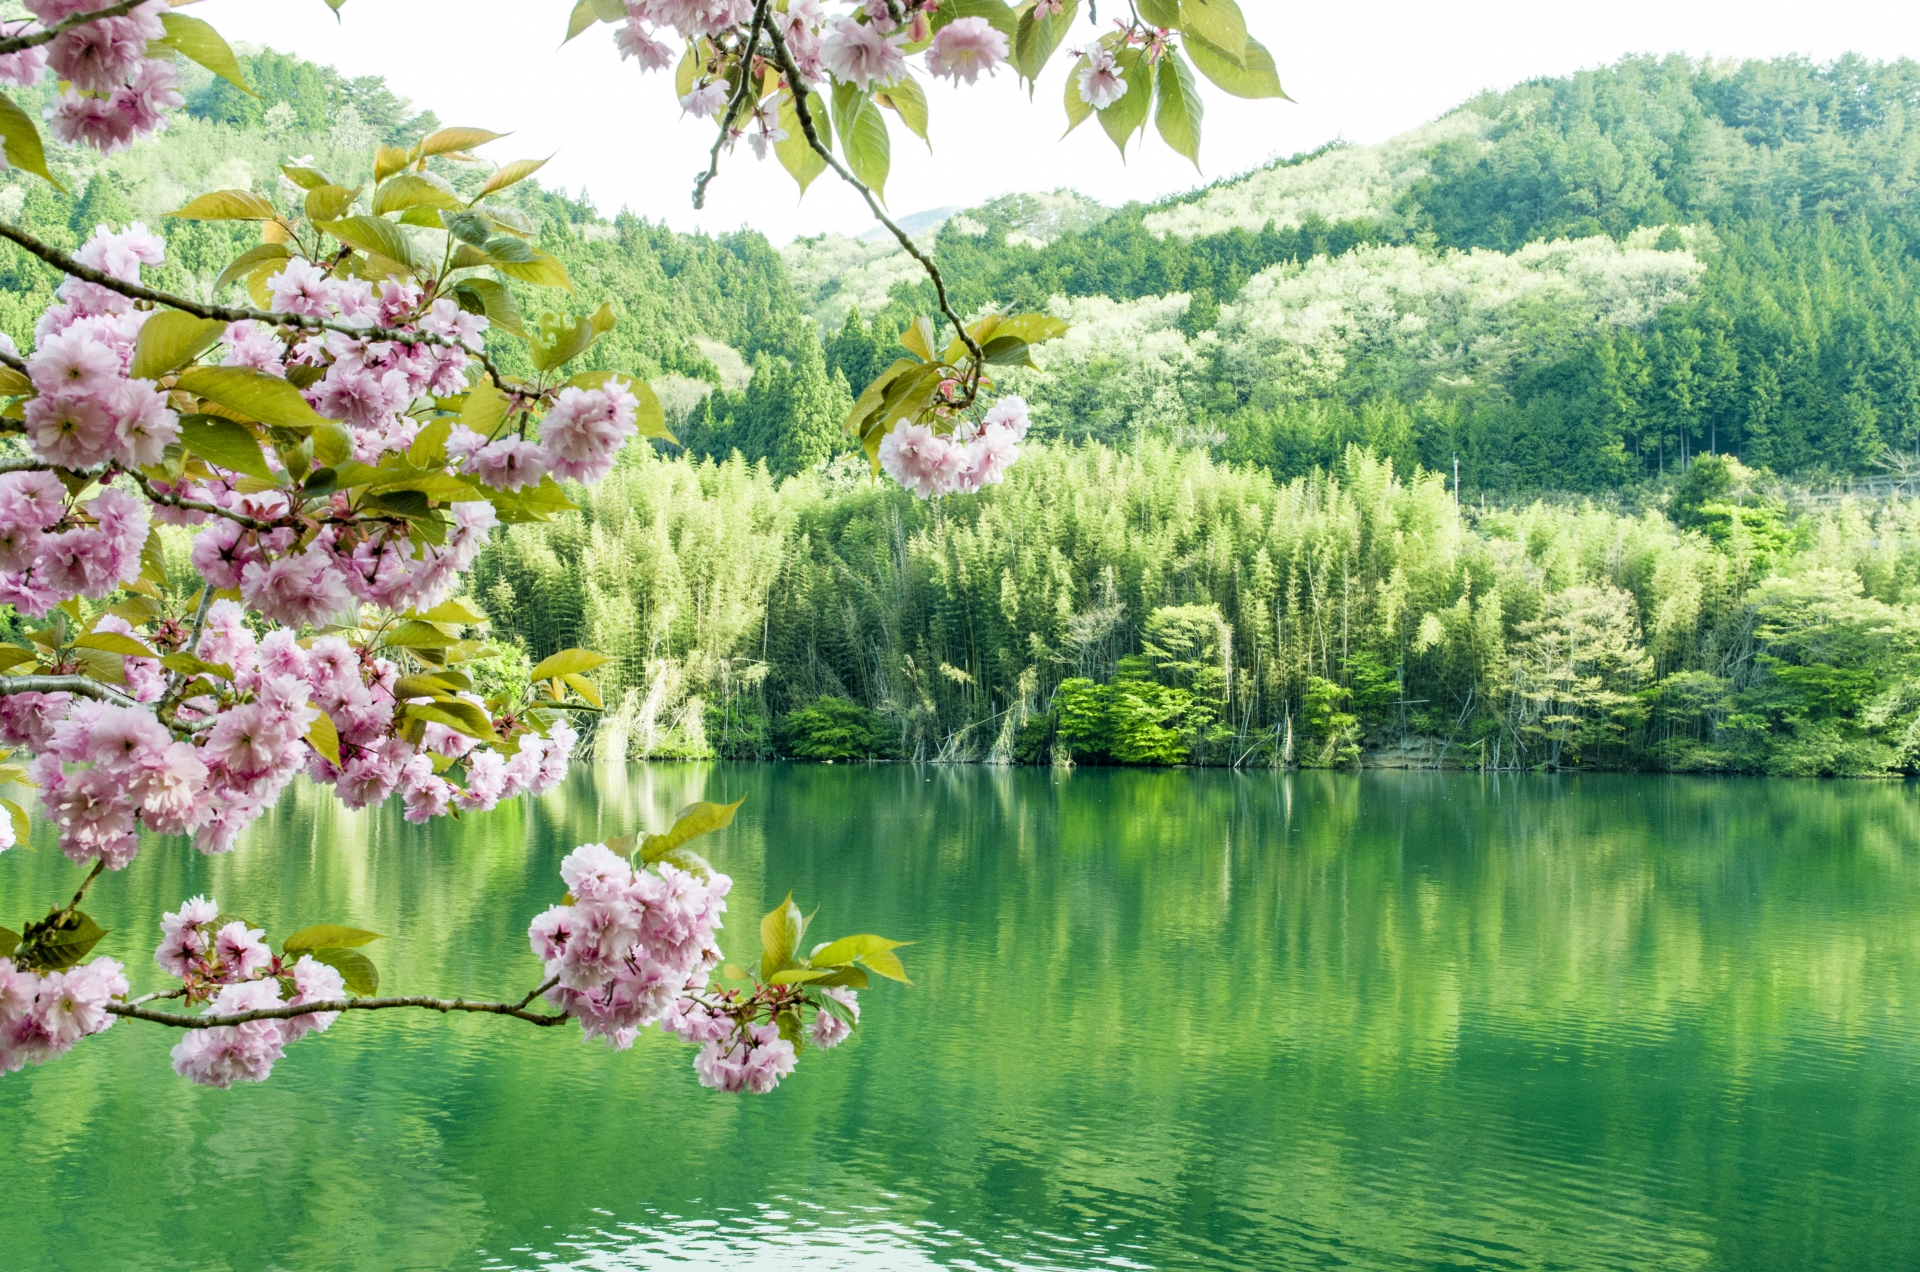 群馬県みどり市の「草木湖」。四季折々の美しさが楽しめます